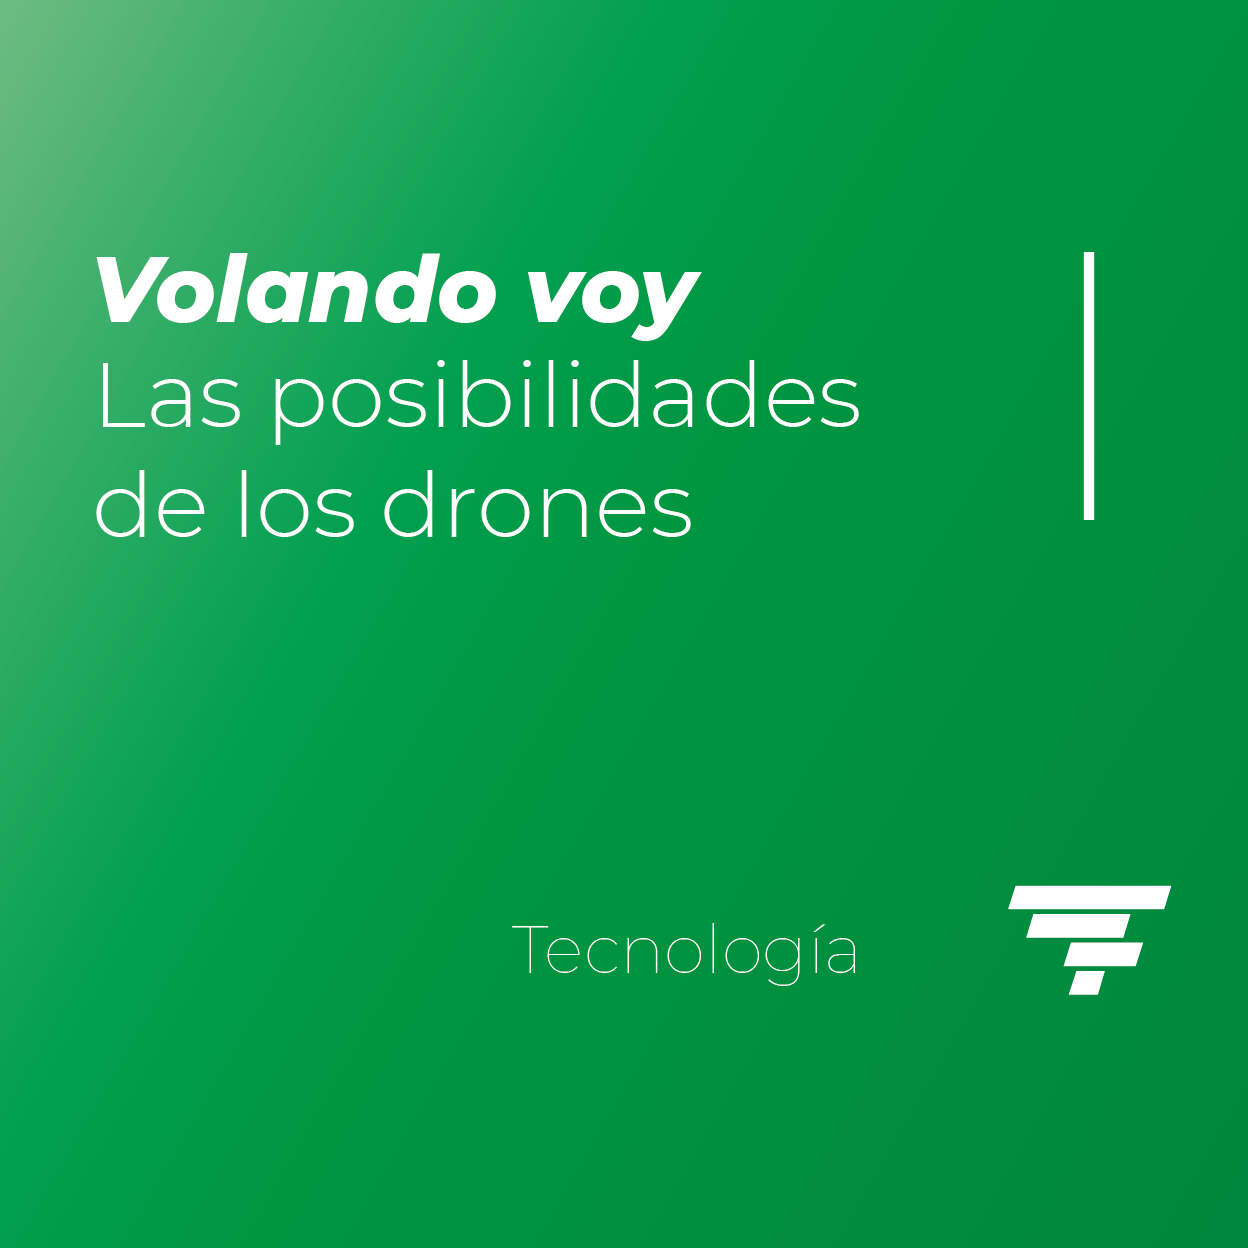 Volando voy: Las posibilidades de los drones